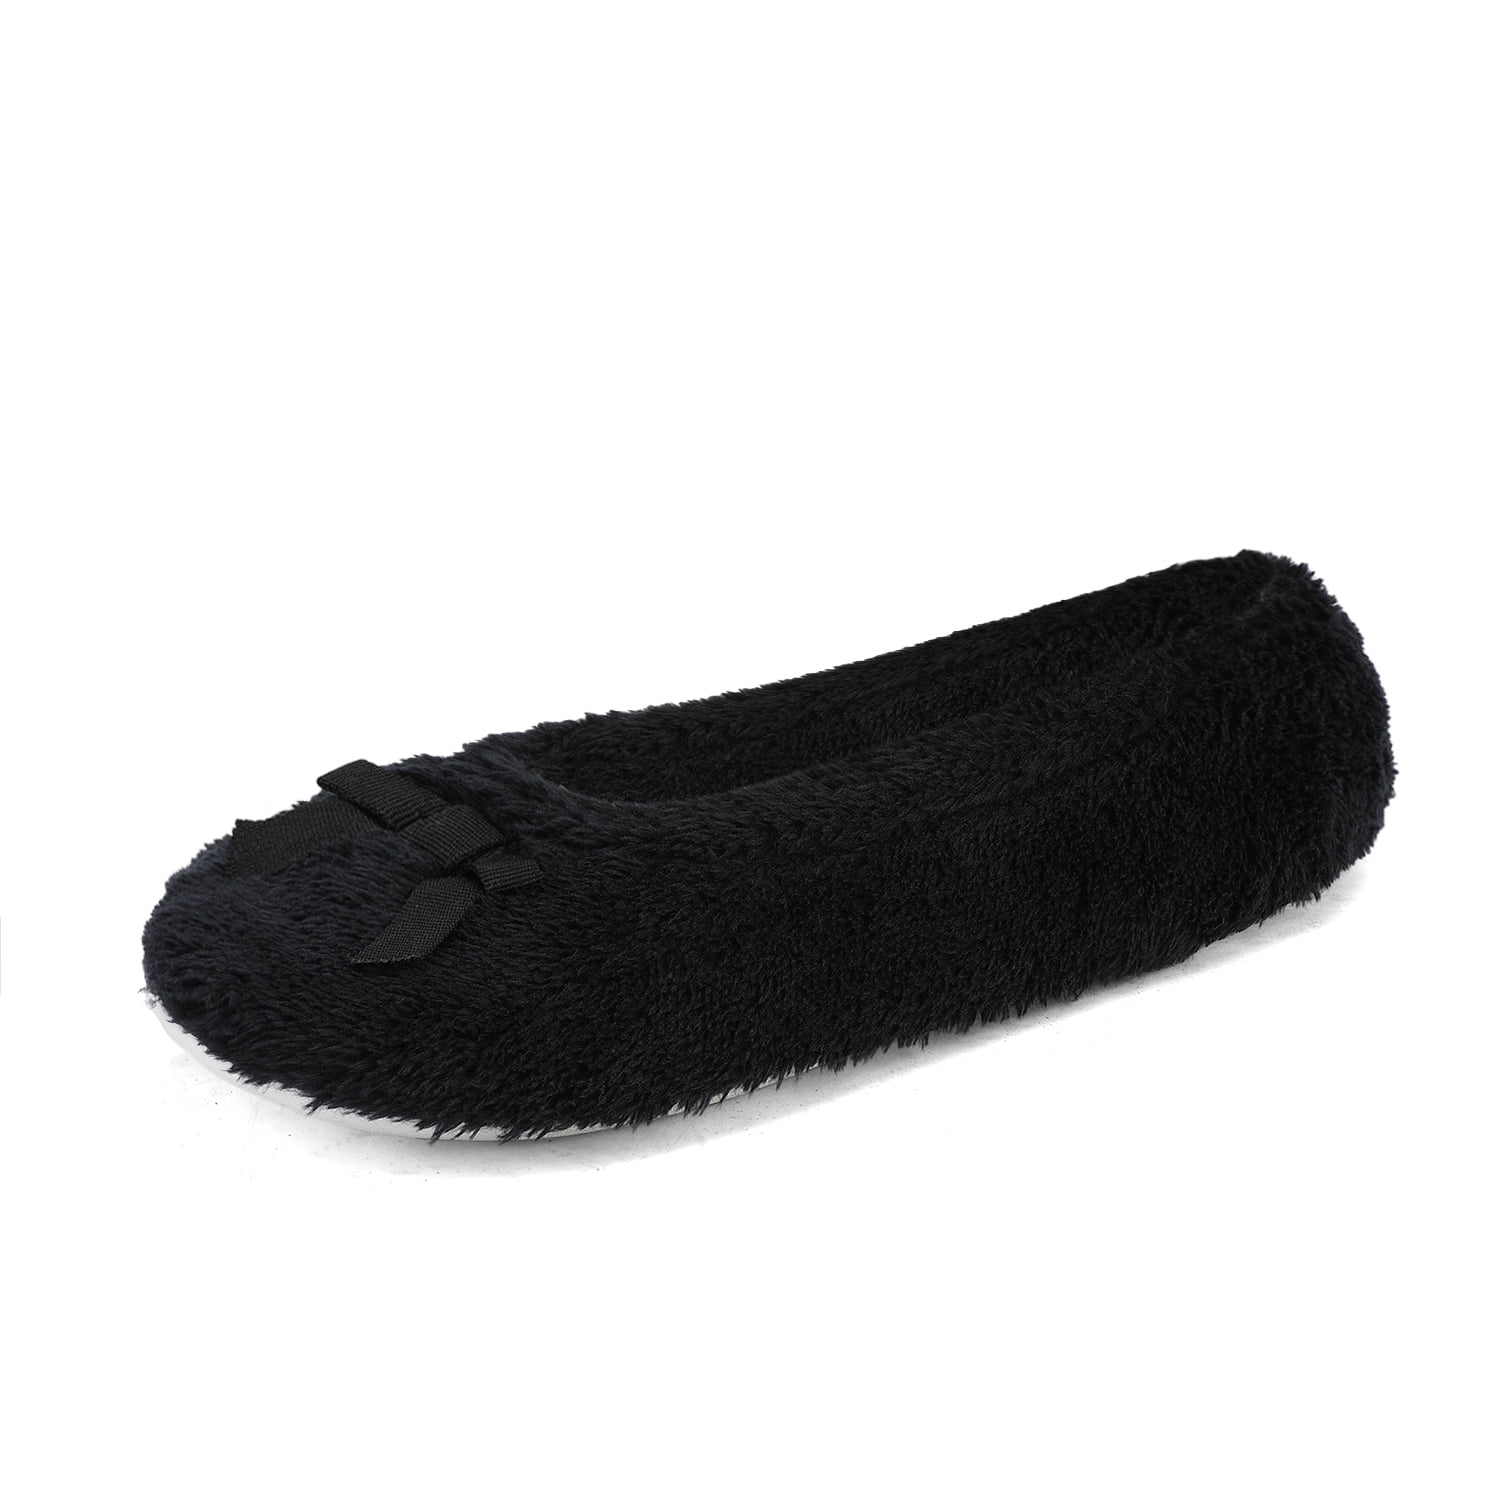 walmart fuzzy slippers